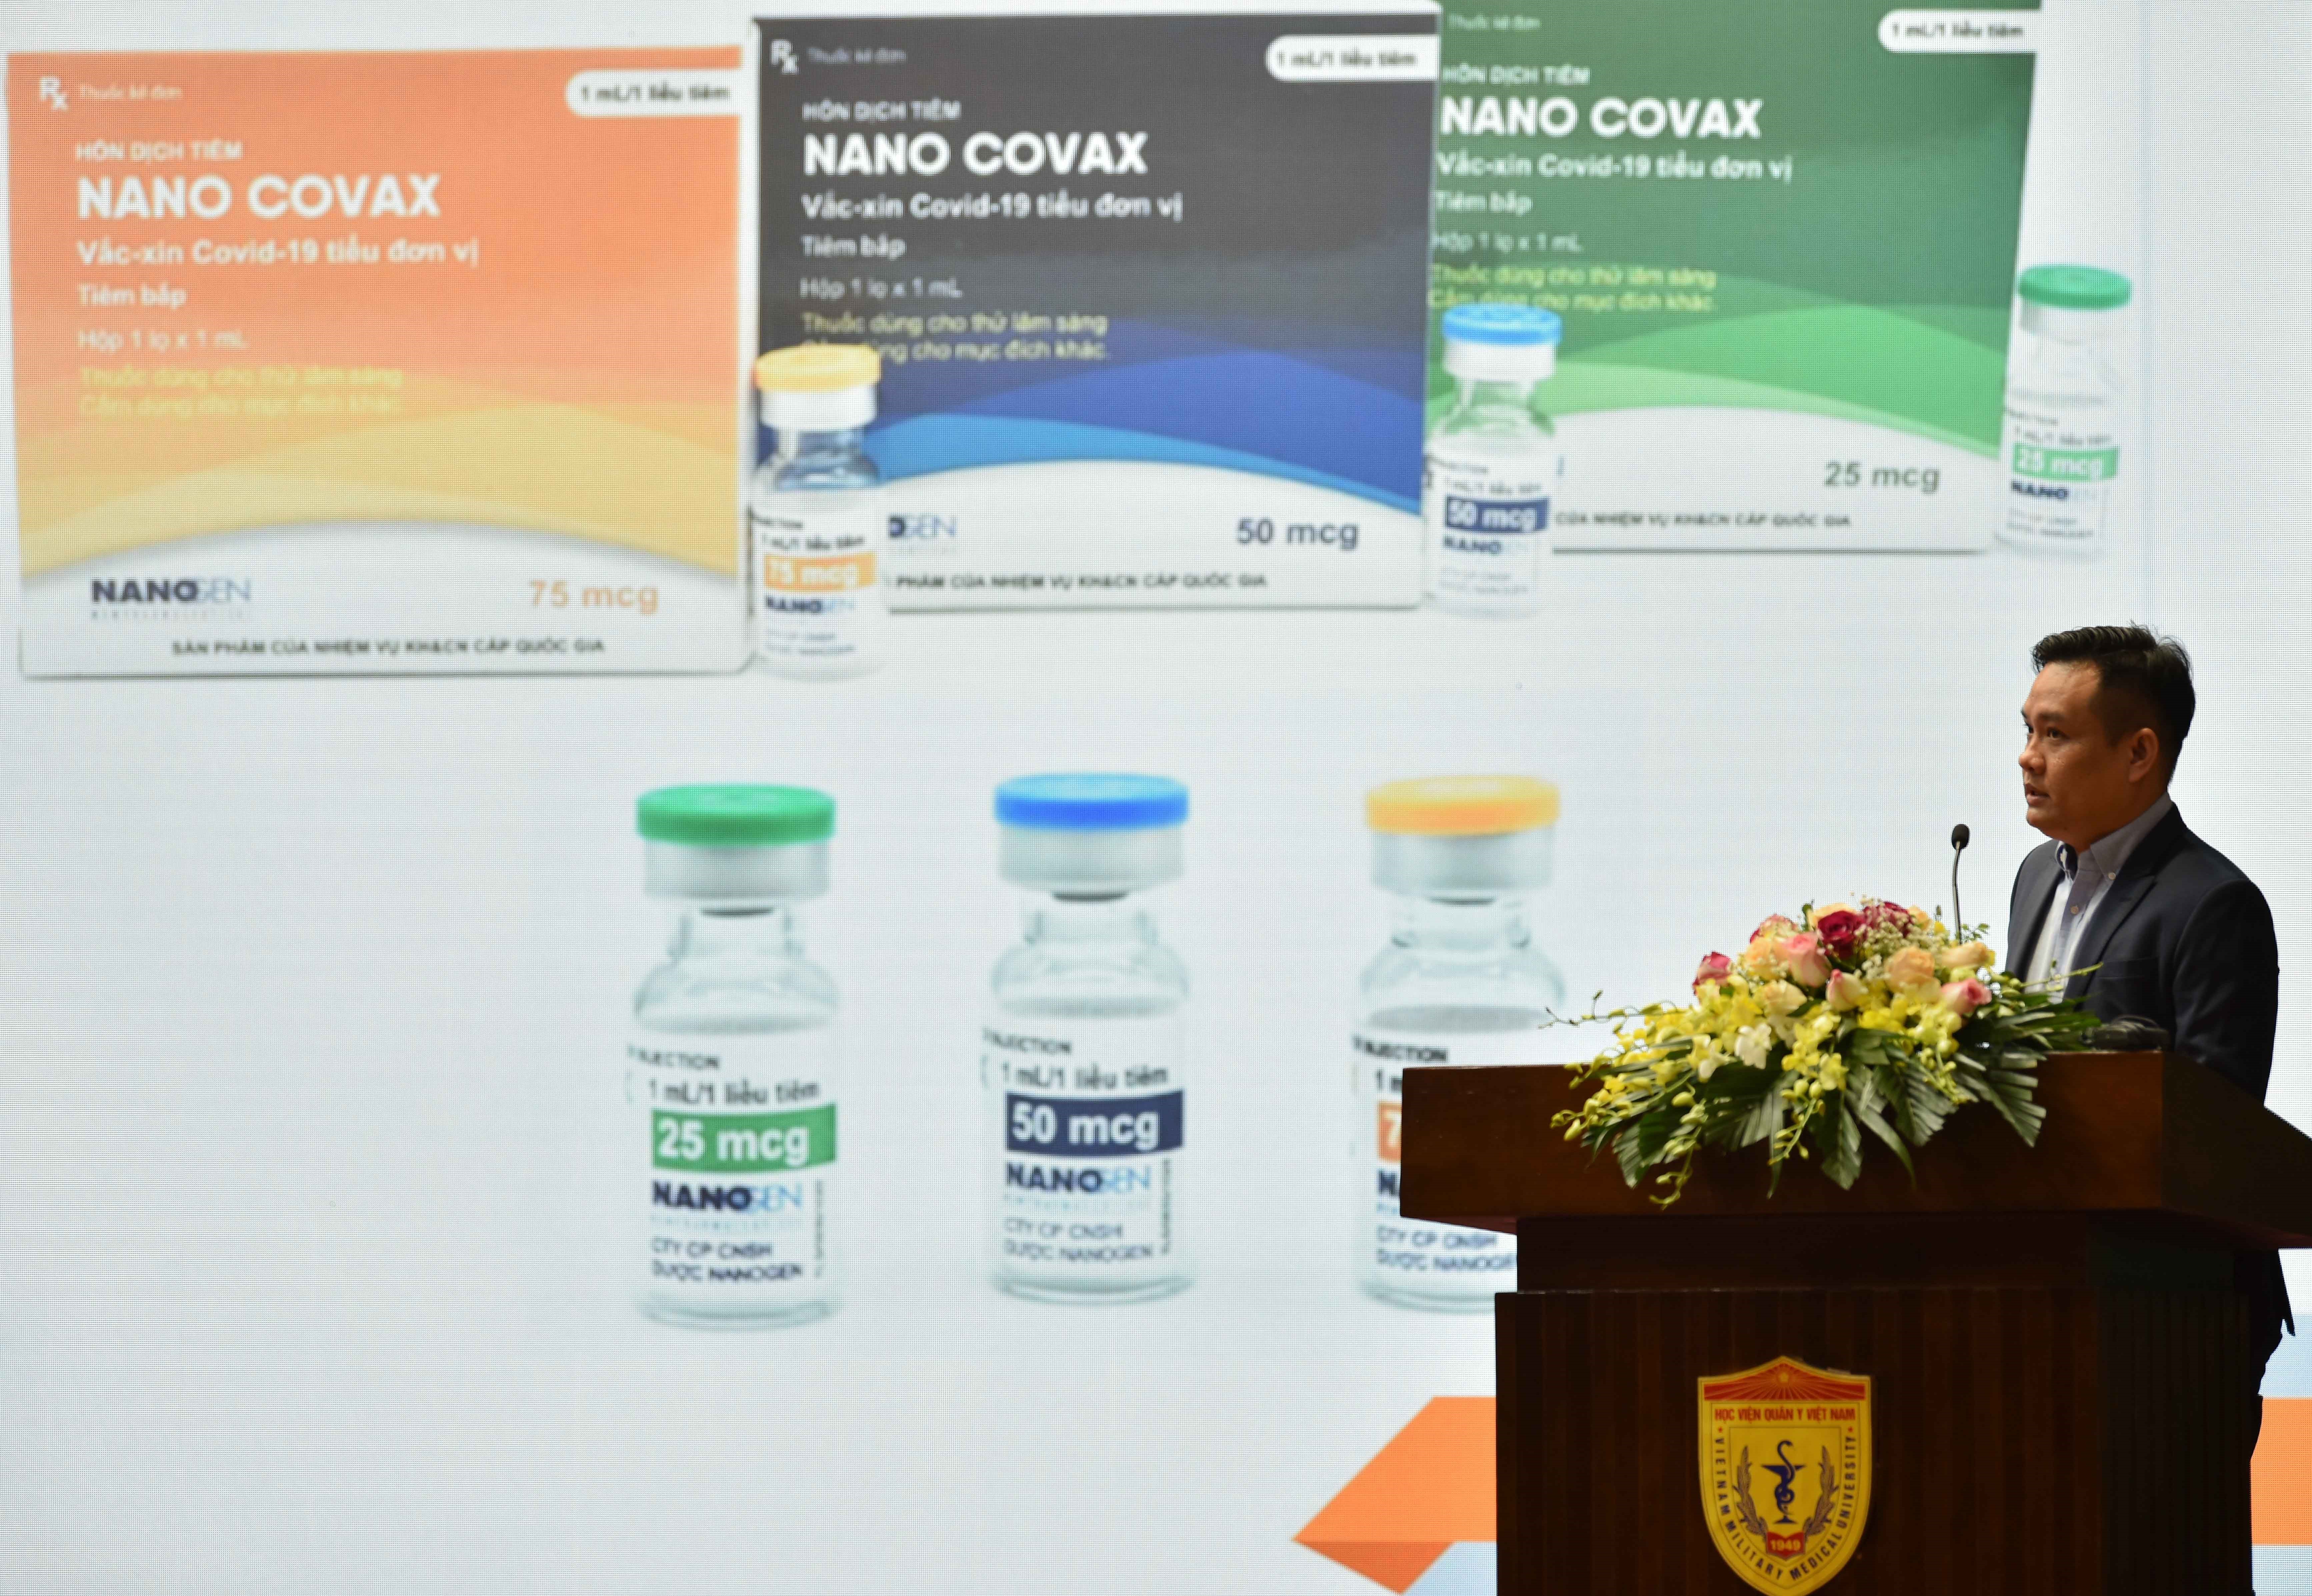 Giới thiệu về vaccine NANO COVAX phòng Covid-19. Ảnh: TTXVN